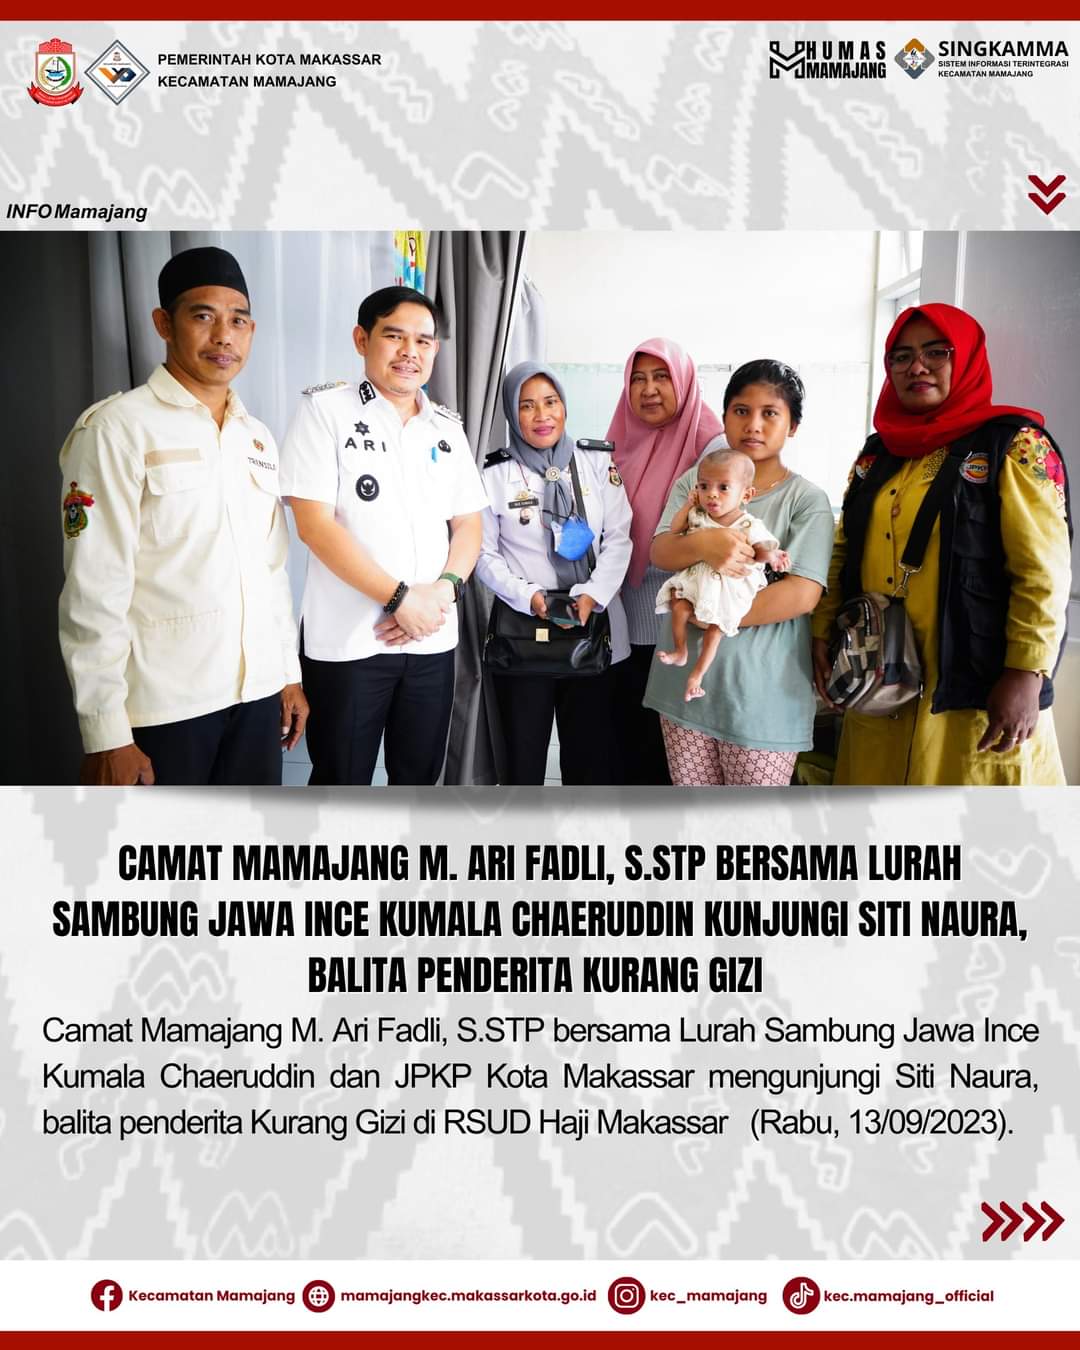 Gambar Camat Mamajang M. Ari Fadli S.STP Bersama Lurah Sambung Jawa Mengunjungi Siti Naura, Balita Penderita Kurang Gizi